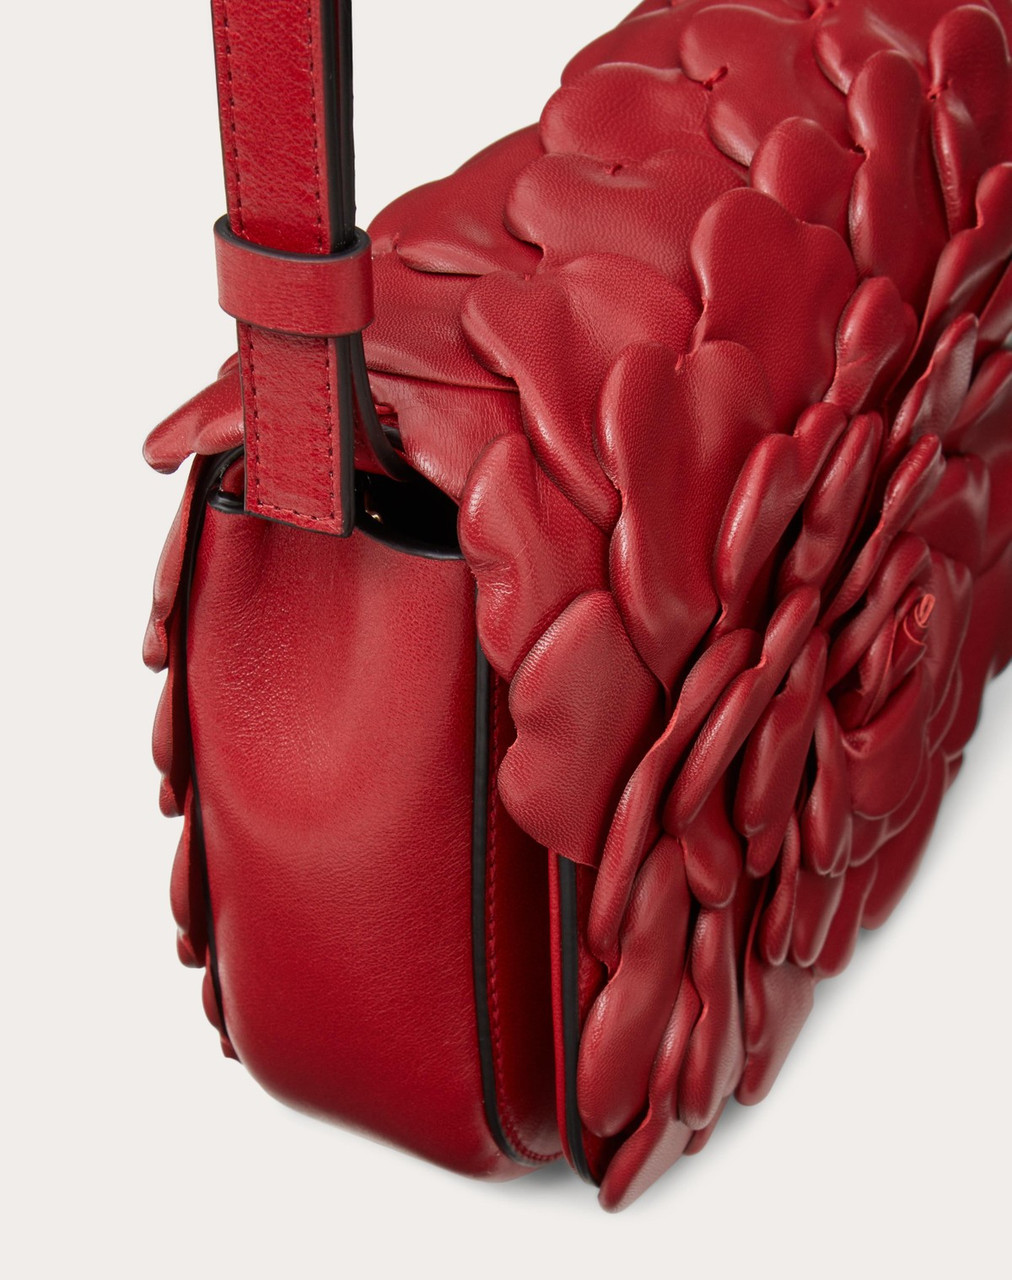 Valentino Garavani Atelier Bag 03 Red Oro Rose Edition Small